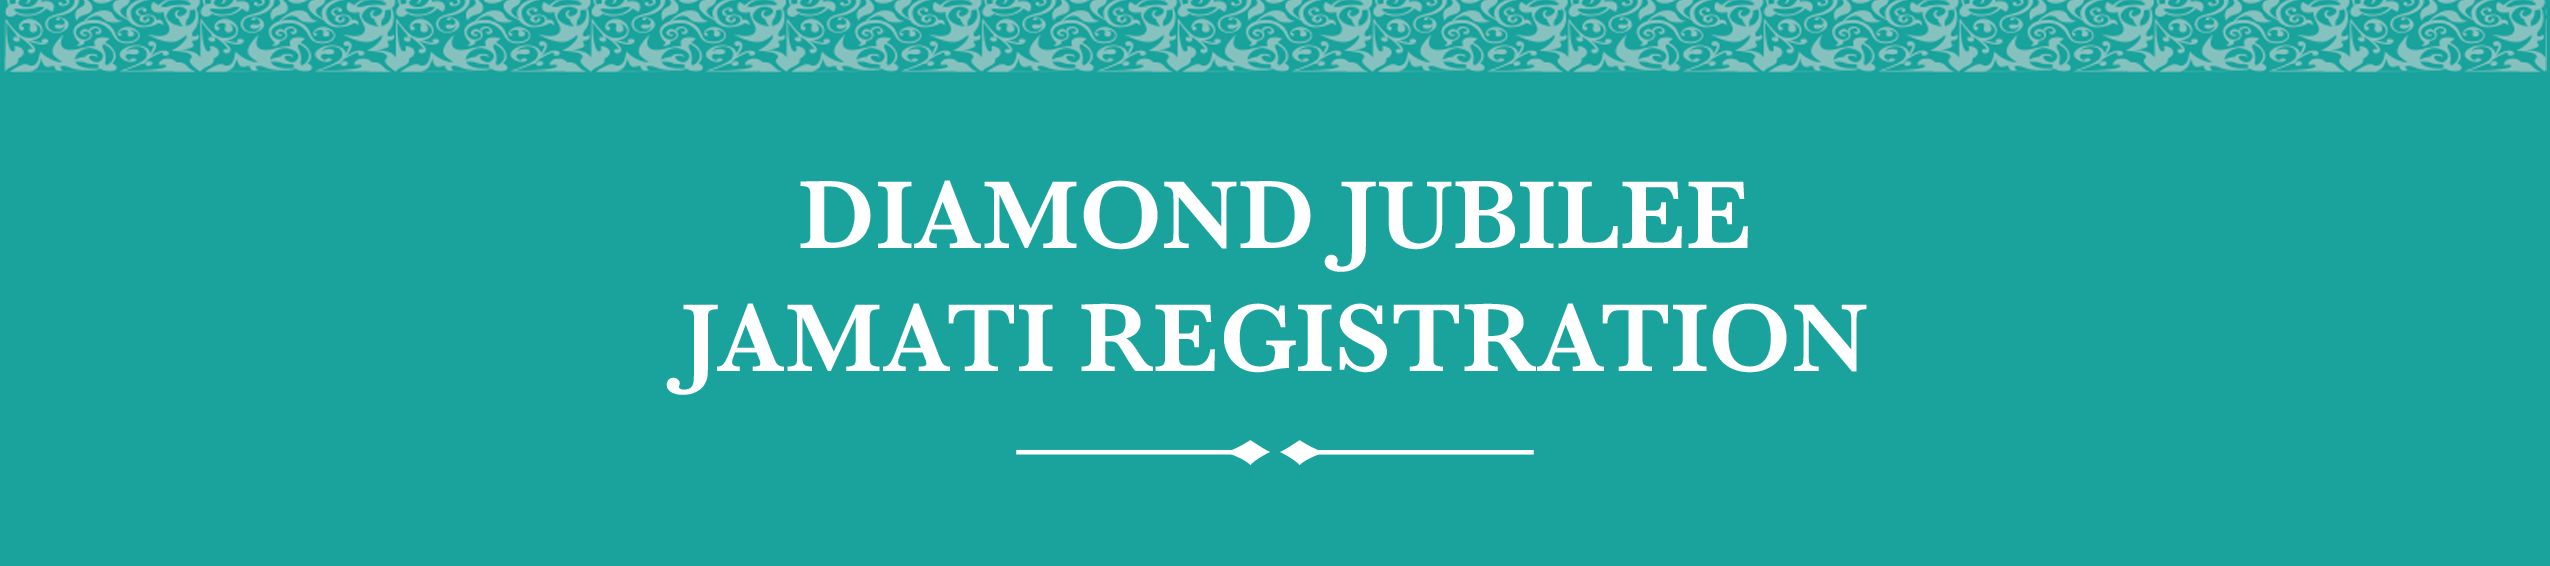 DIAMOND jUBILEE JAMATI REGISTRATION